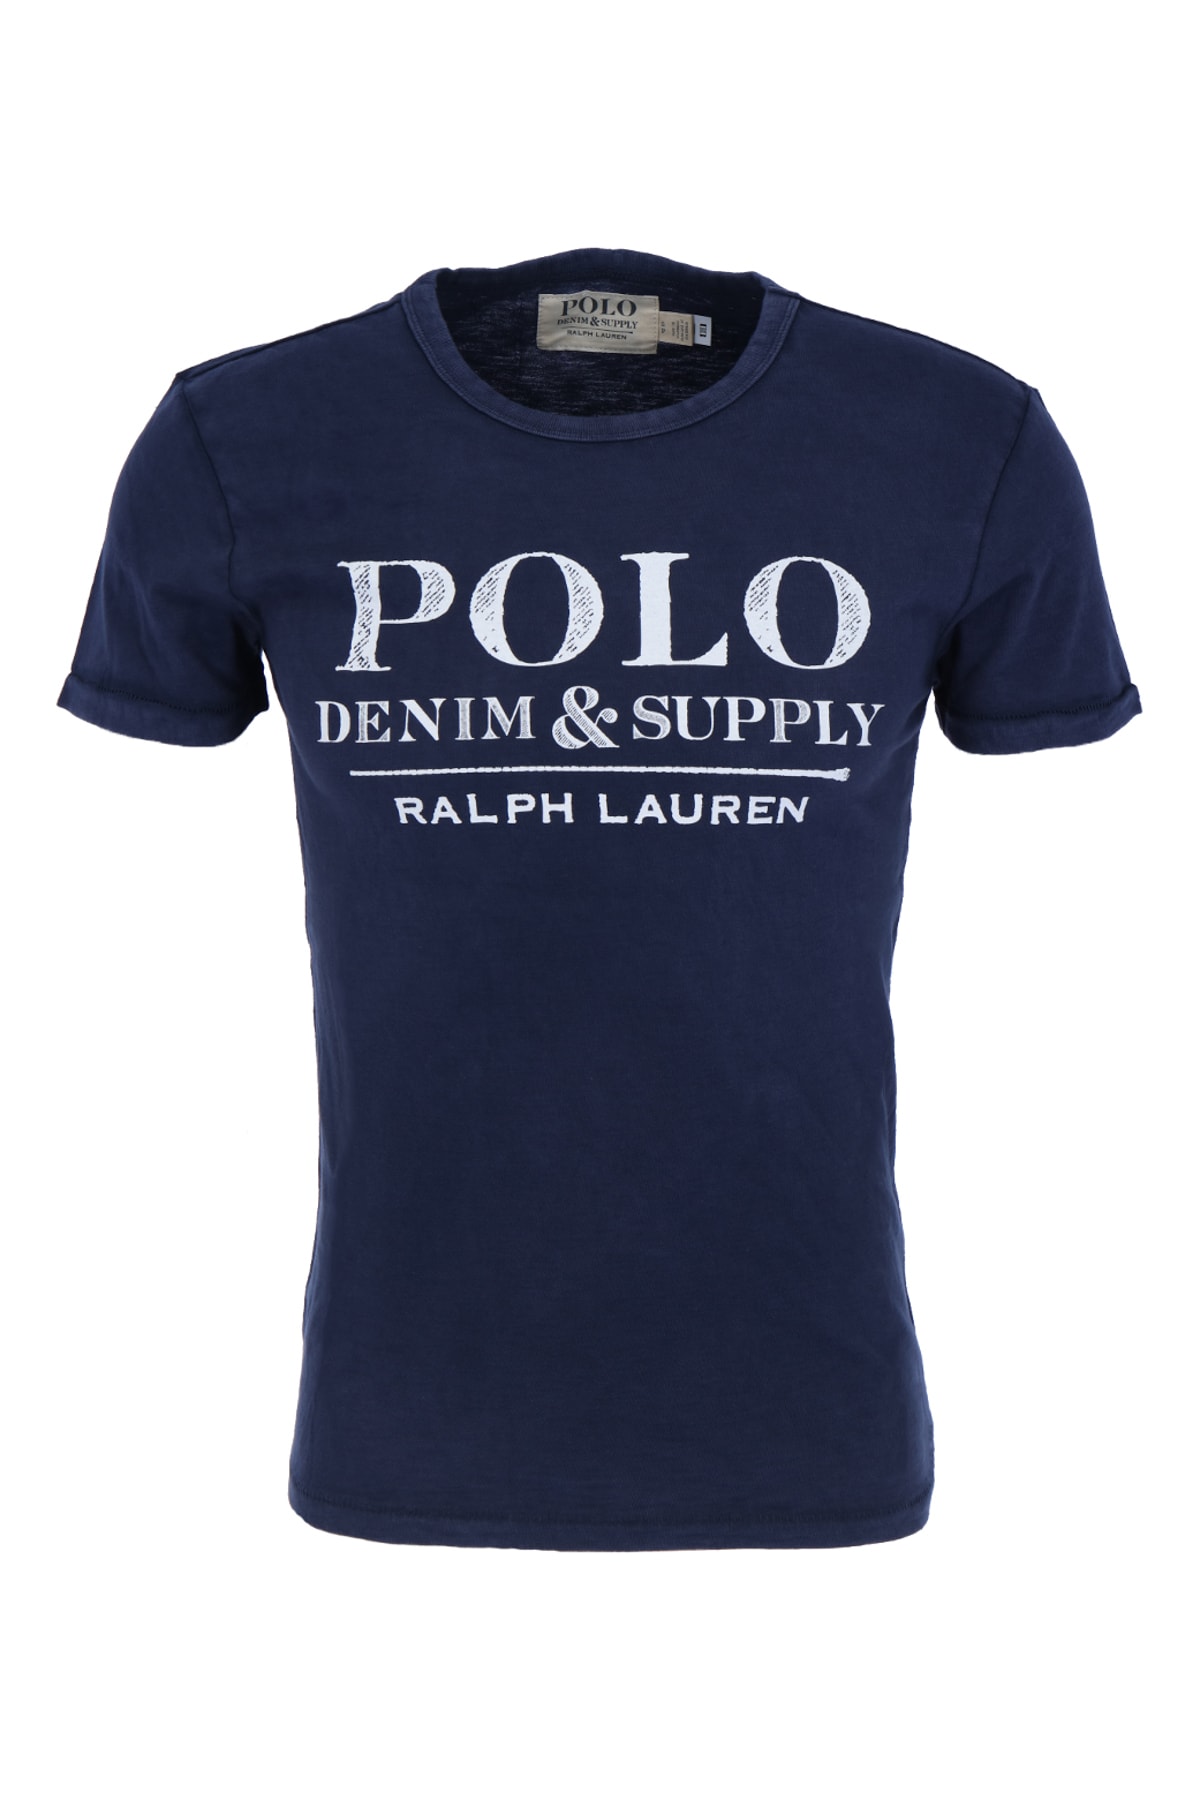 Polo Ralph Lauren T-Shirt Dunkelblau Regular Fit Fast ausverkauft